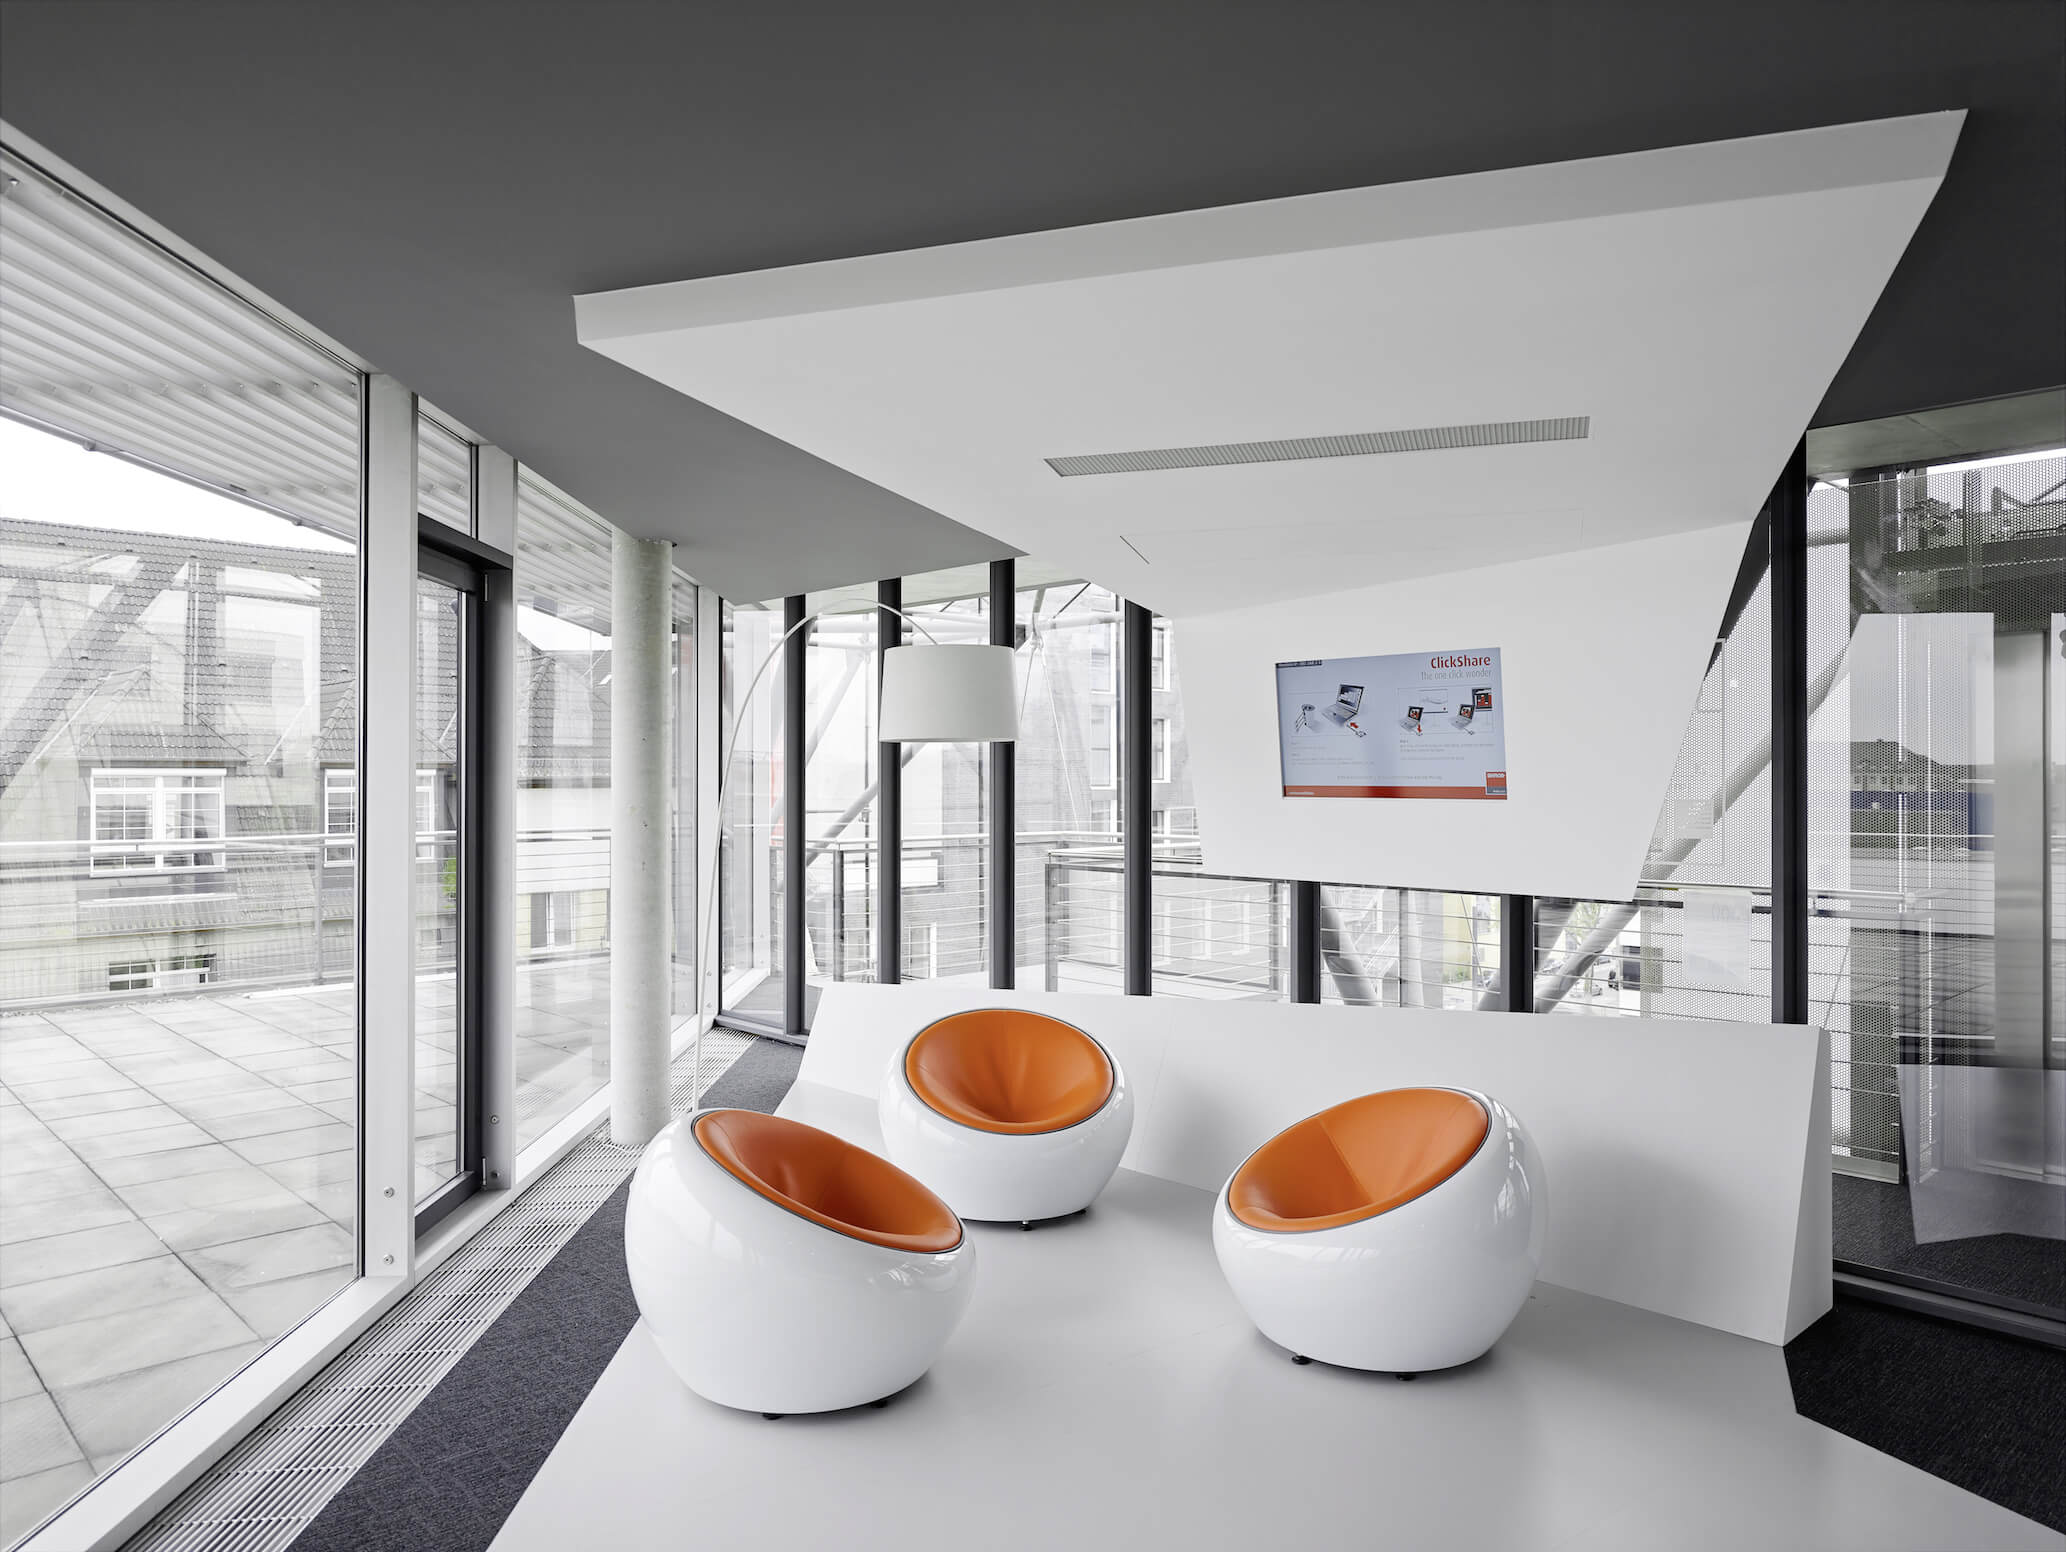 在这里，我们可以更仔细地观察这三张橙色皮革座椅的“鸡蛋”椅。全高玻璃环绕着空间，提供自然光线和广阔的极简主义感觉。